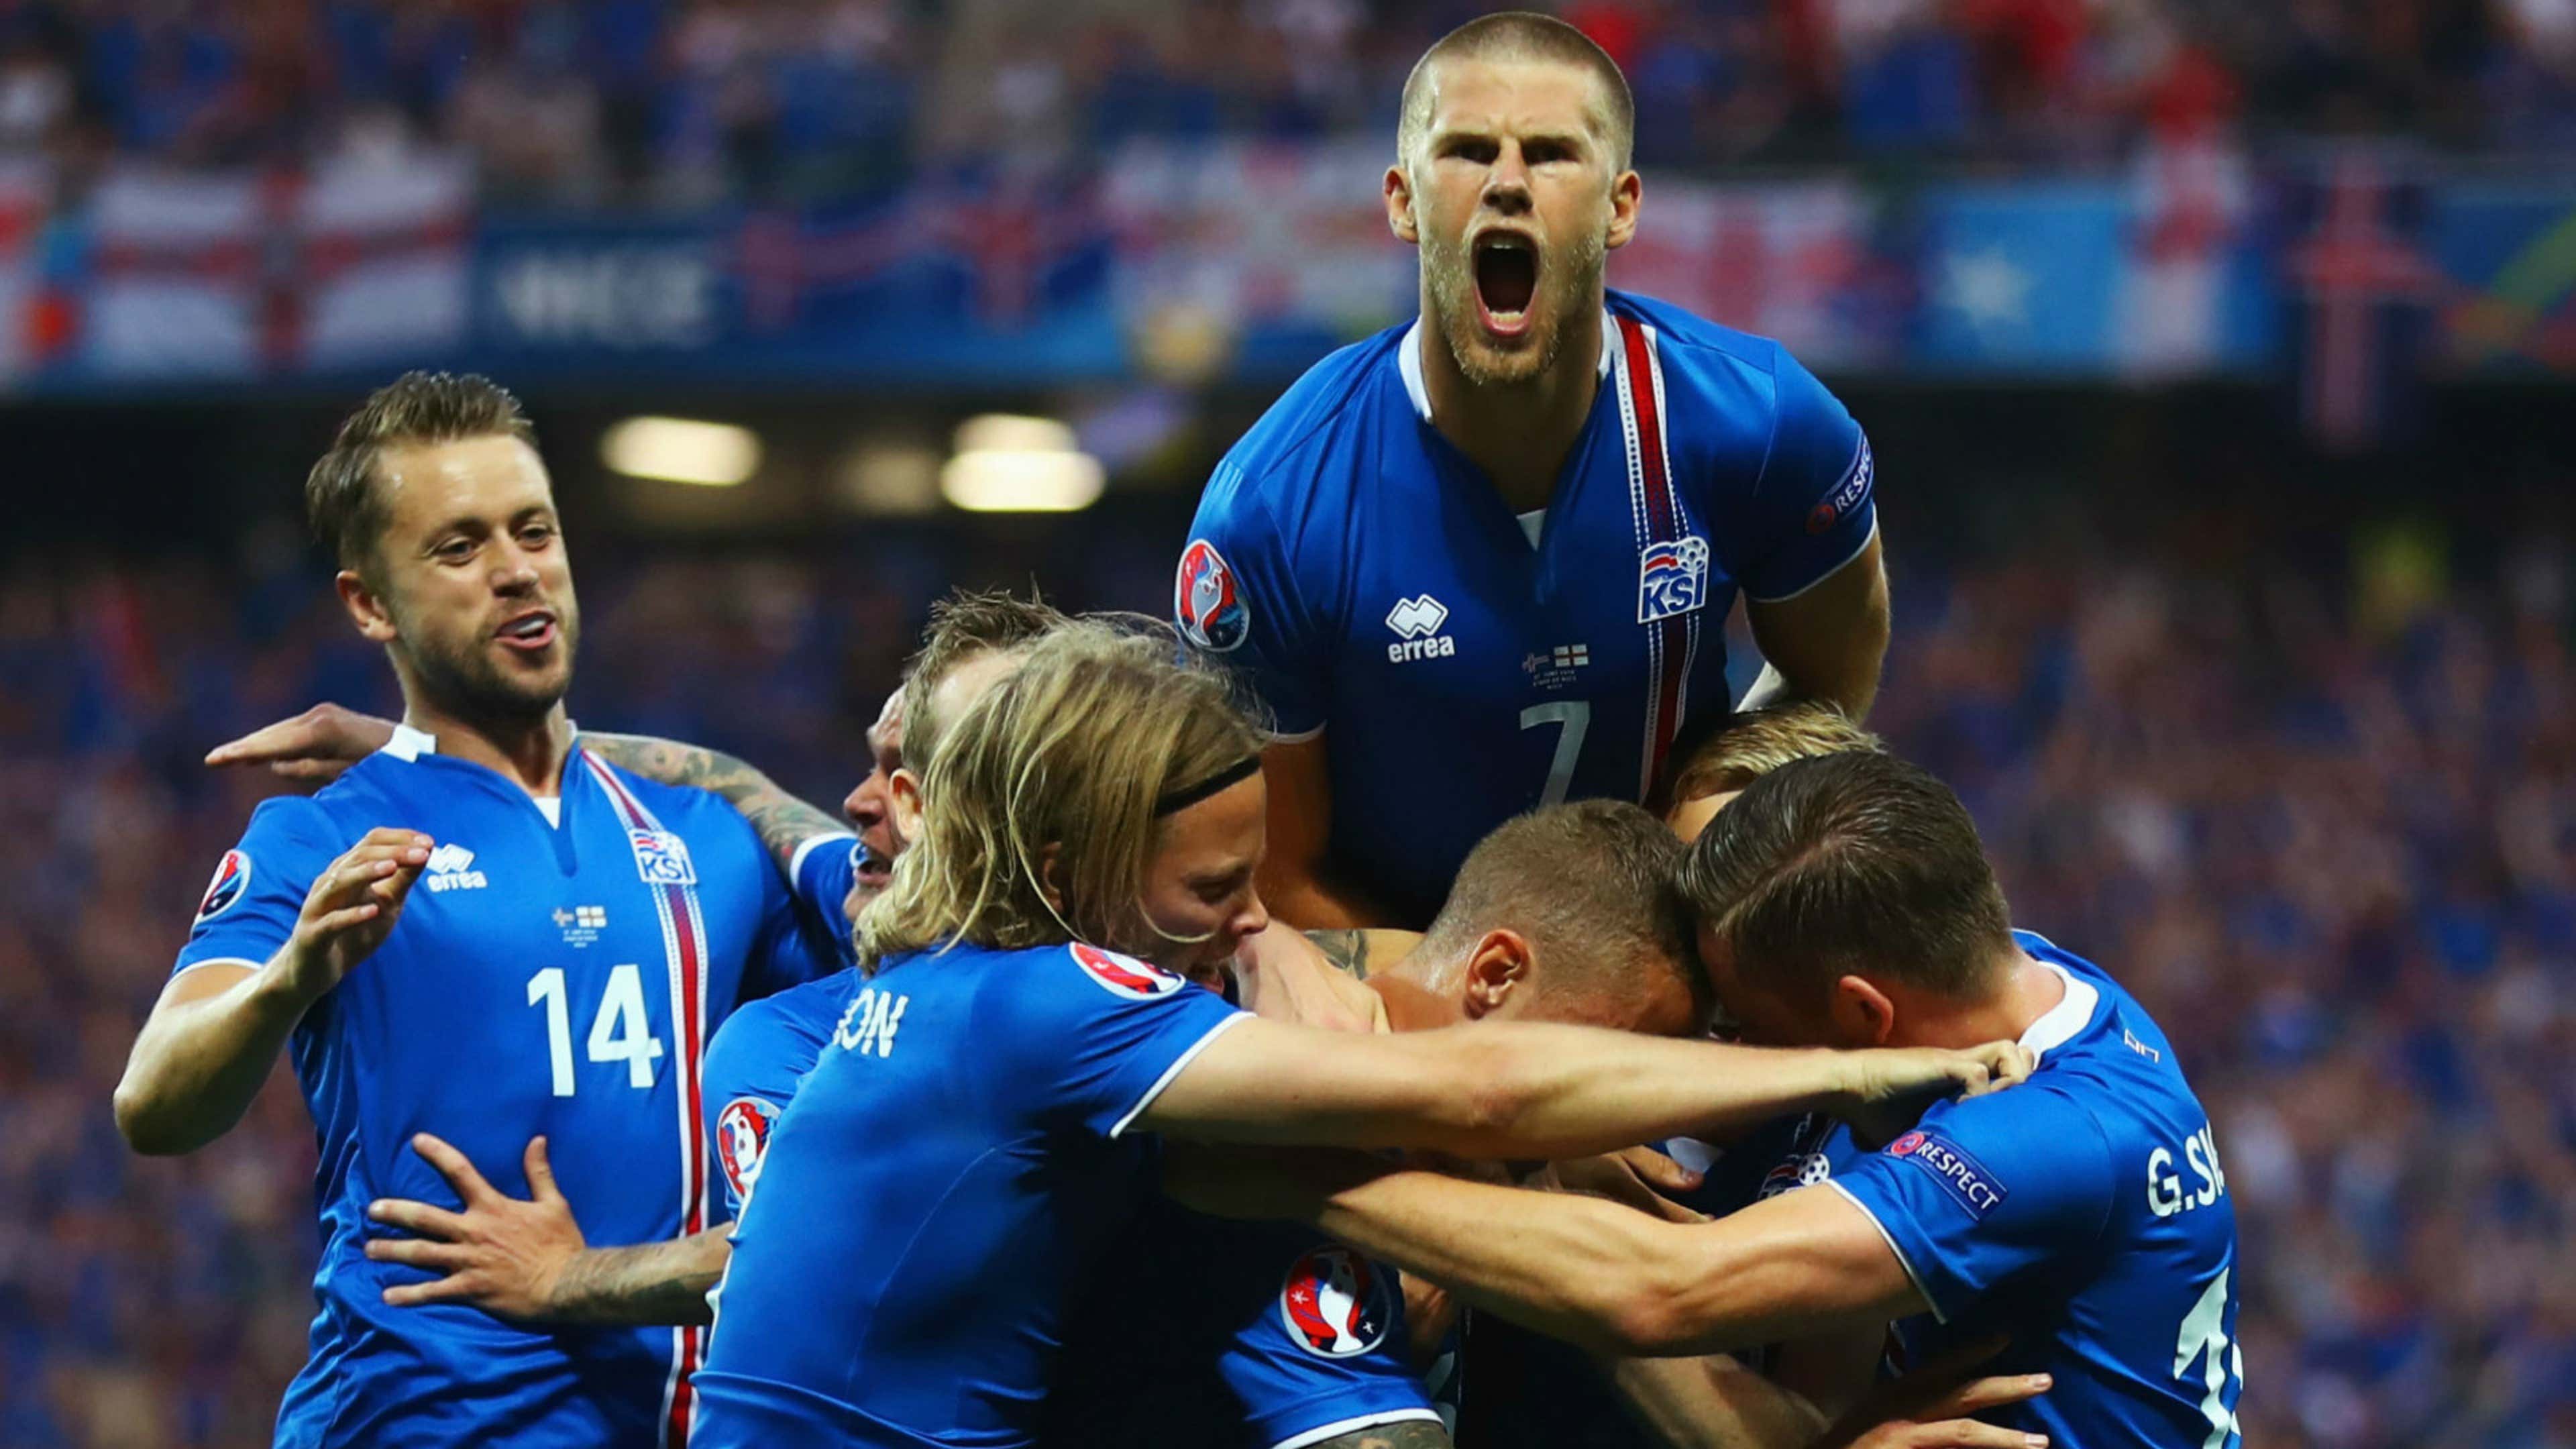 Iceland Euro 2016